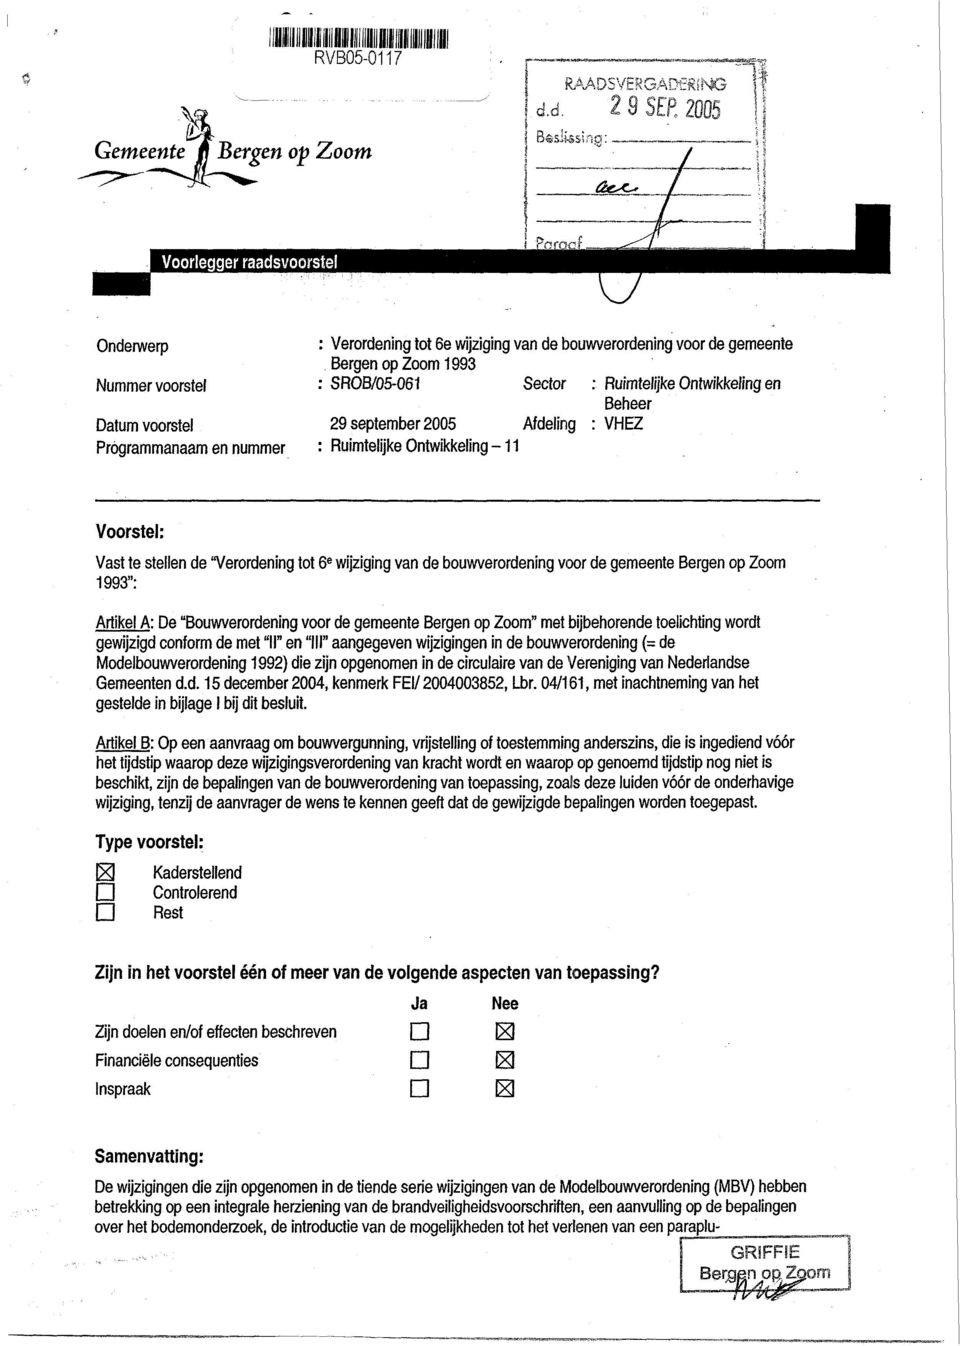 gemeente Bergen op Zoom 1993": Artikel A: De "Bouwverordening voor de gemeente Bergen op Zoom" met bijbehorende toelichting wordt gewijzigd conform de met "II" en "III" aangegeven wijzigingen in de